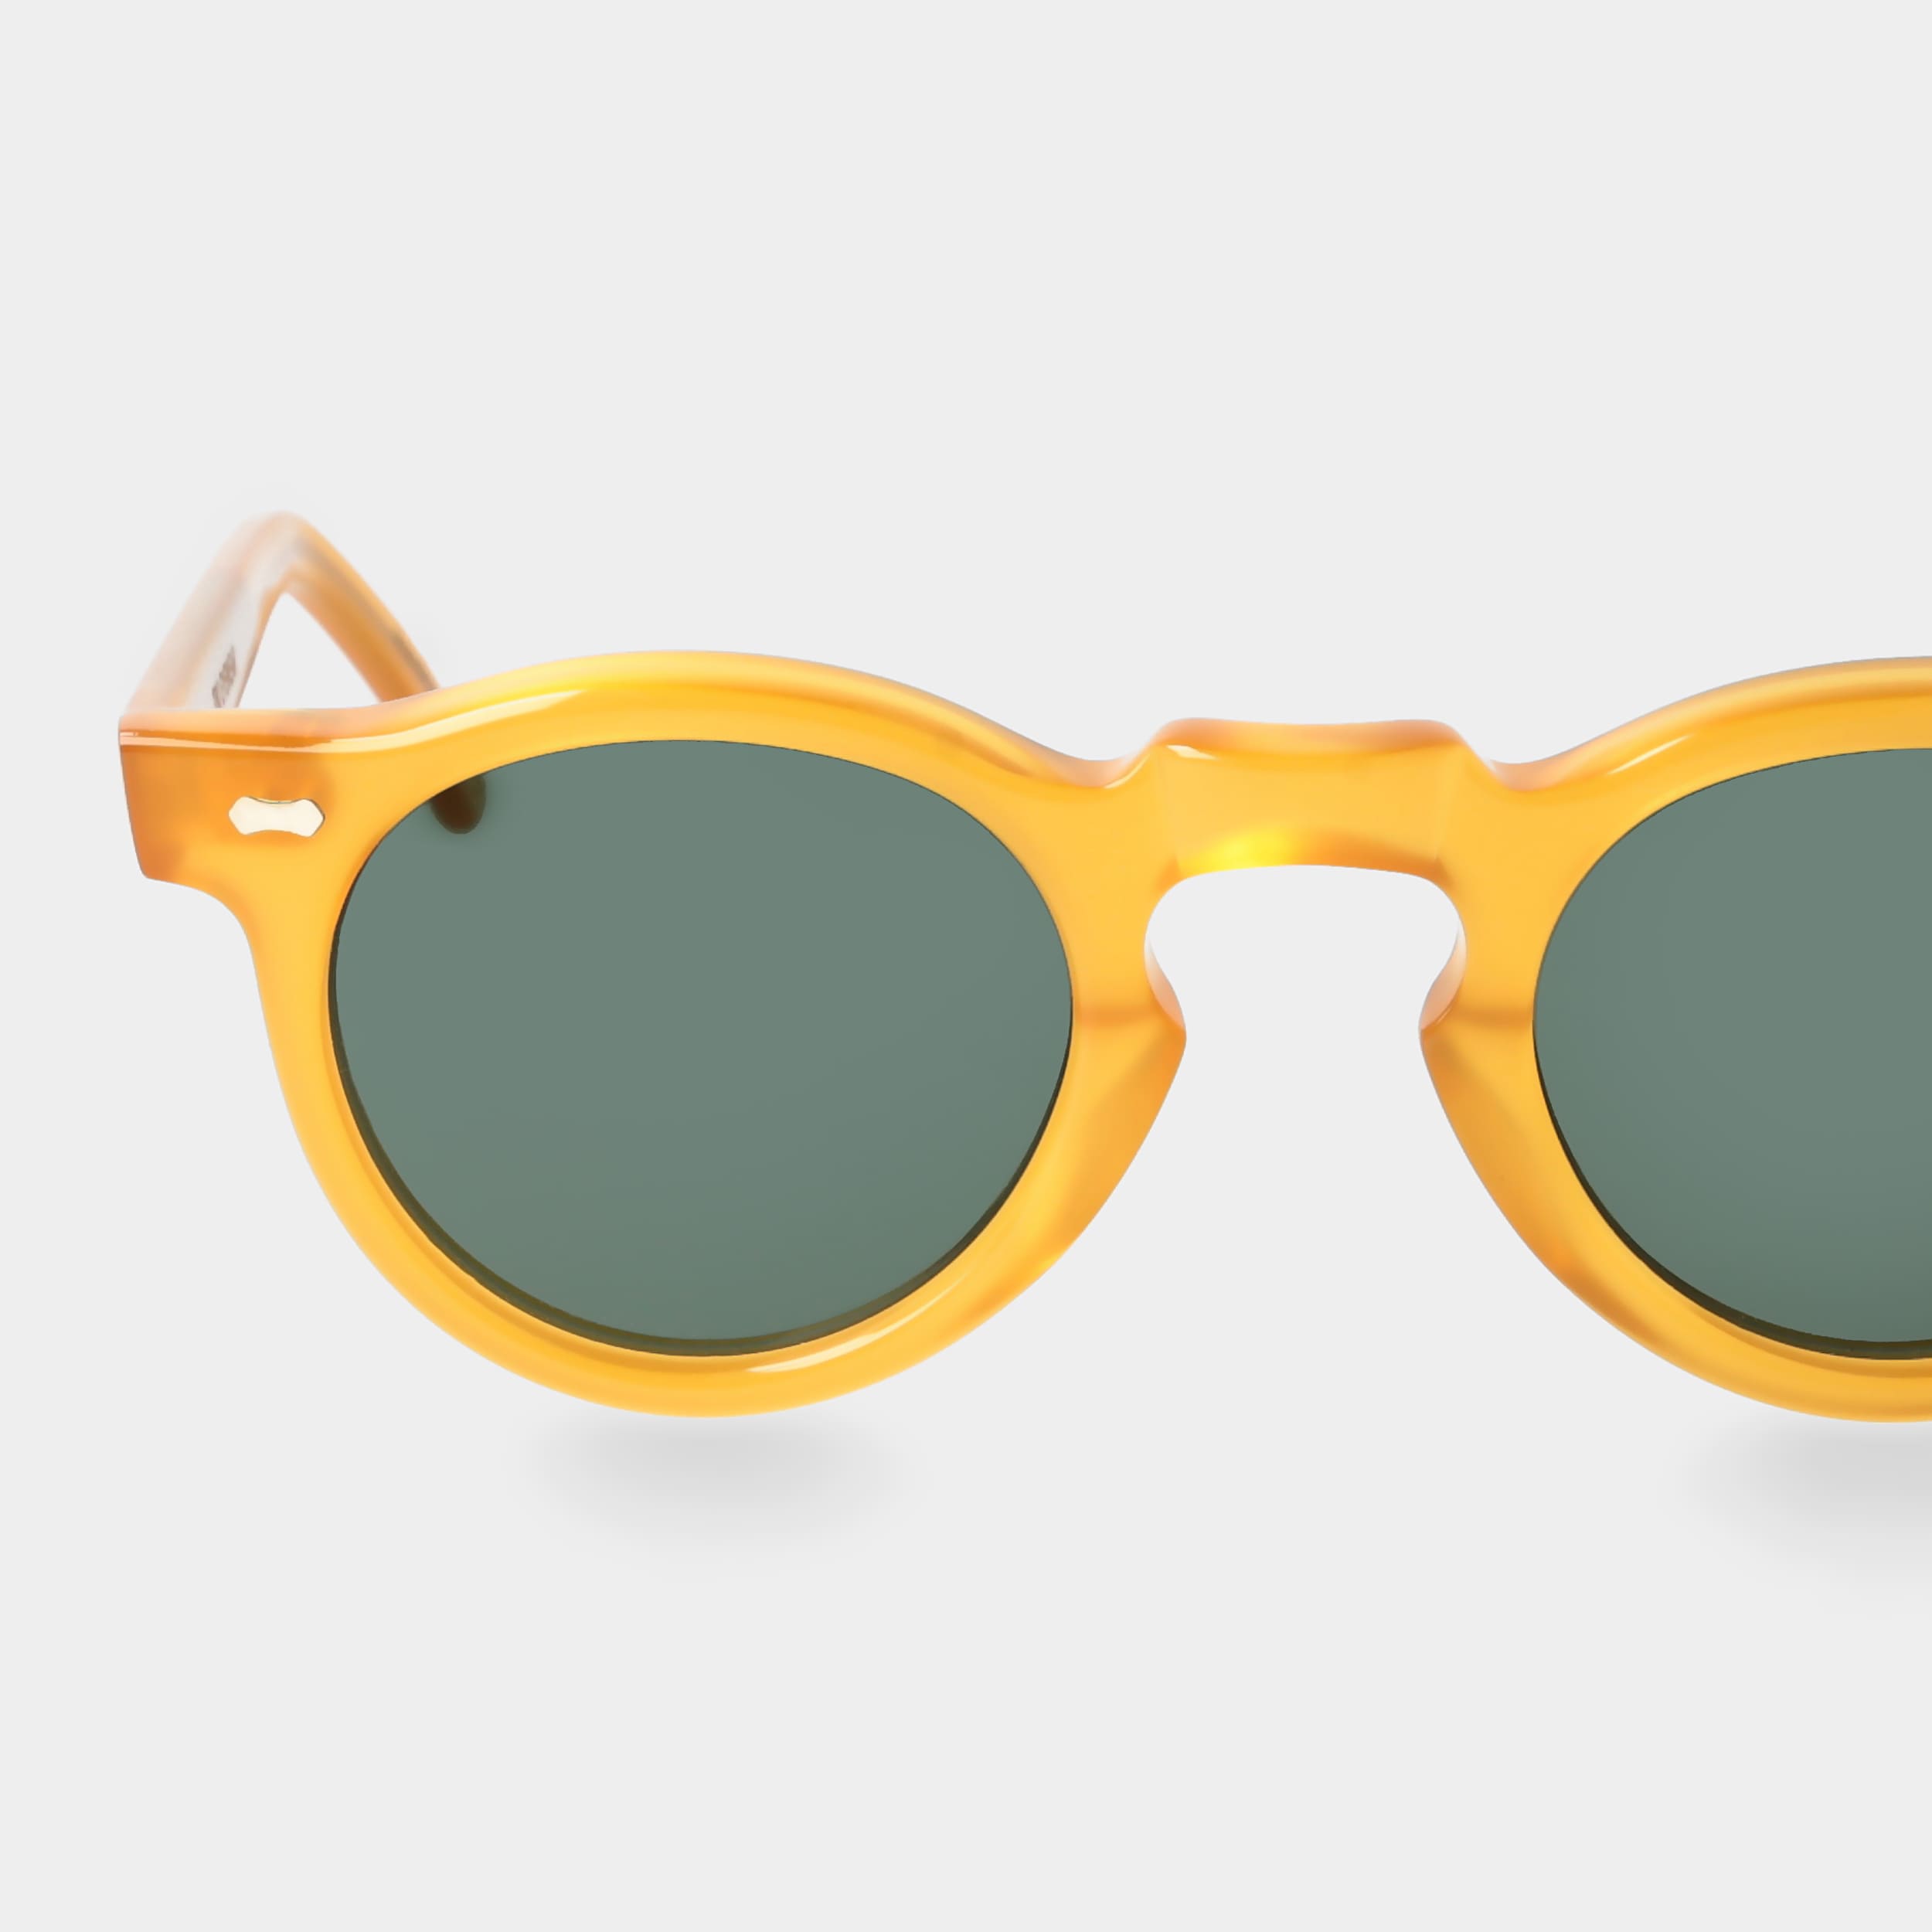 Eyewear | Sonnenbrille Welt Gläsern: TBD mit Gelbe grünen